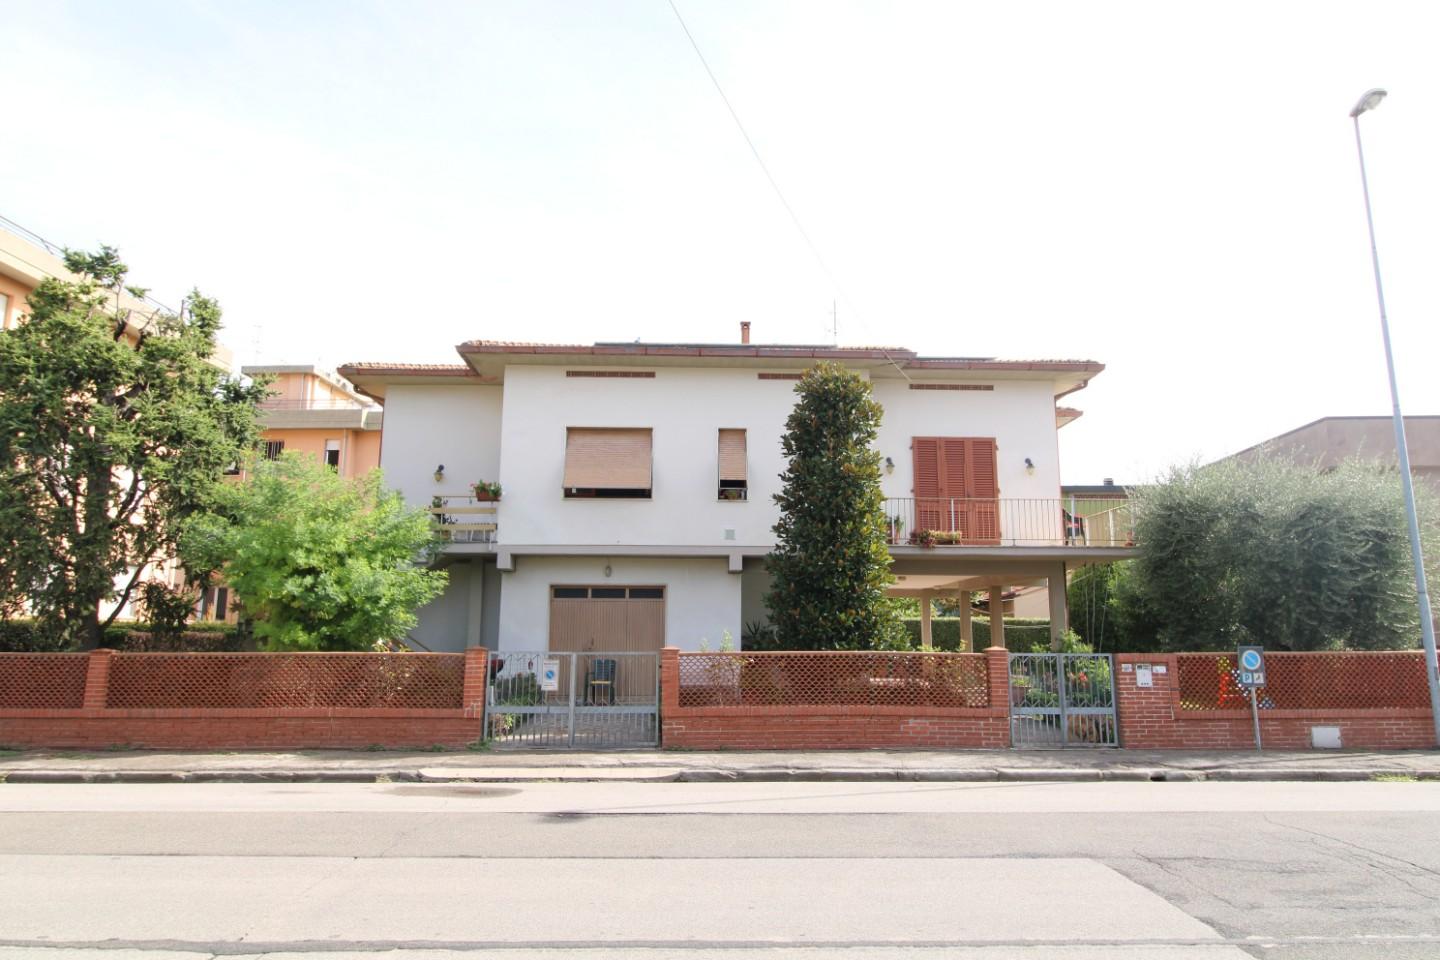 Casa singola in vendita a Santa Croce sull'Arno (PI)